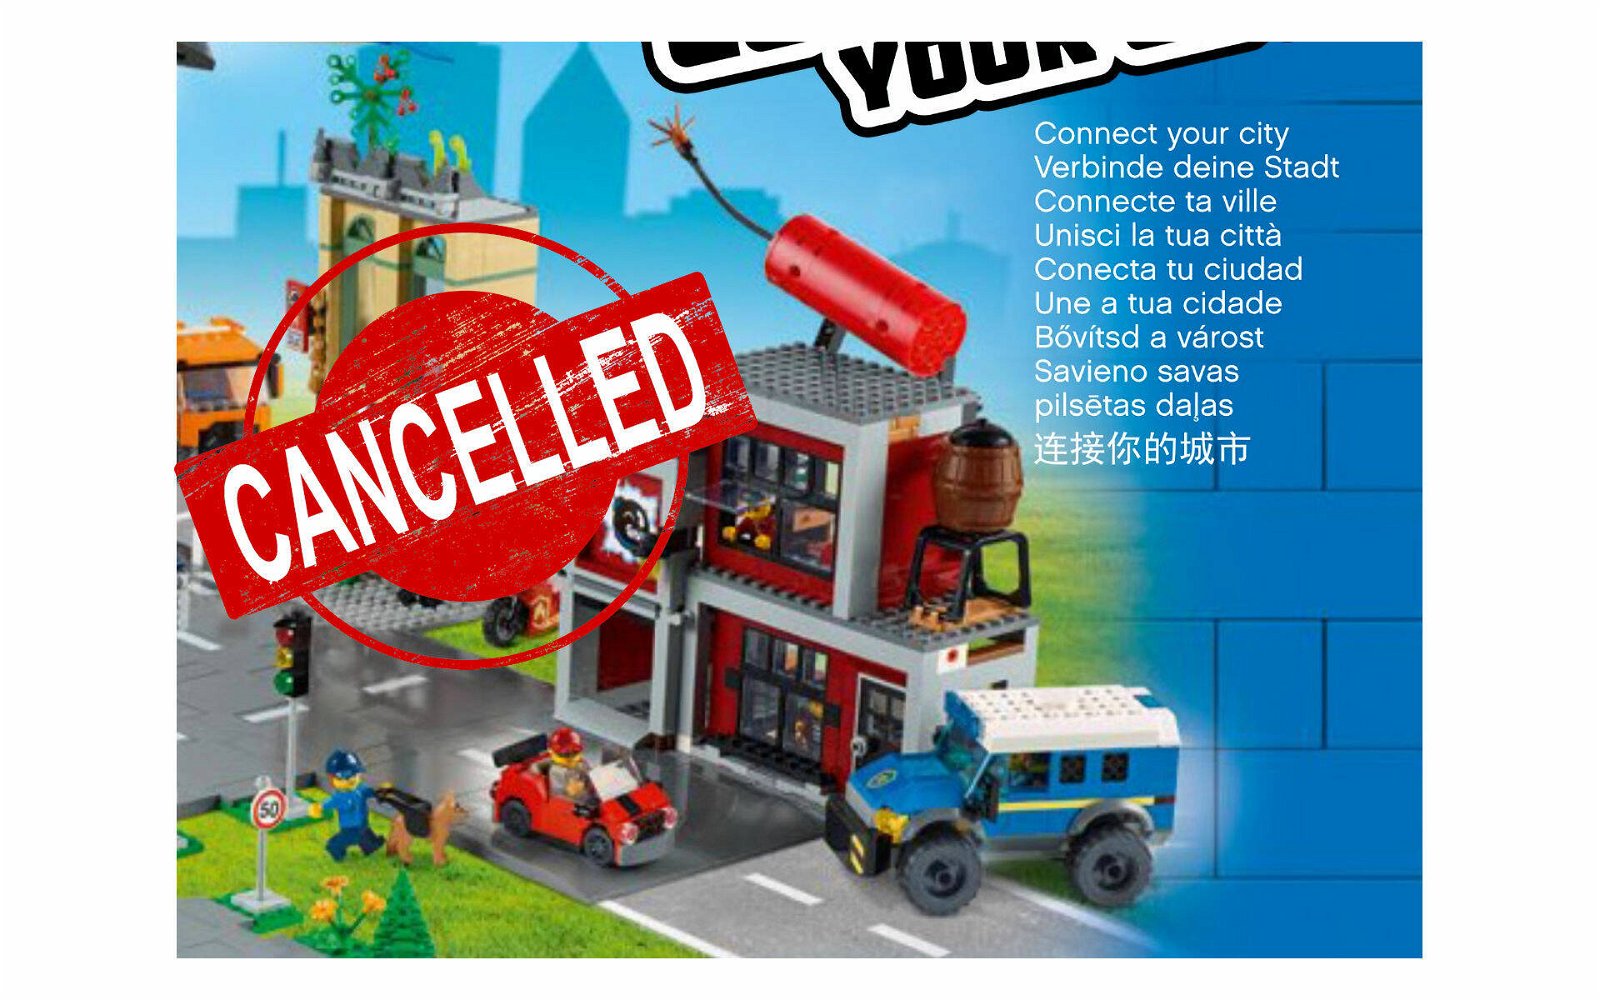 Immagine di LEGO: cancellato set in uscita perchè in contrasto con i valori del marchio